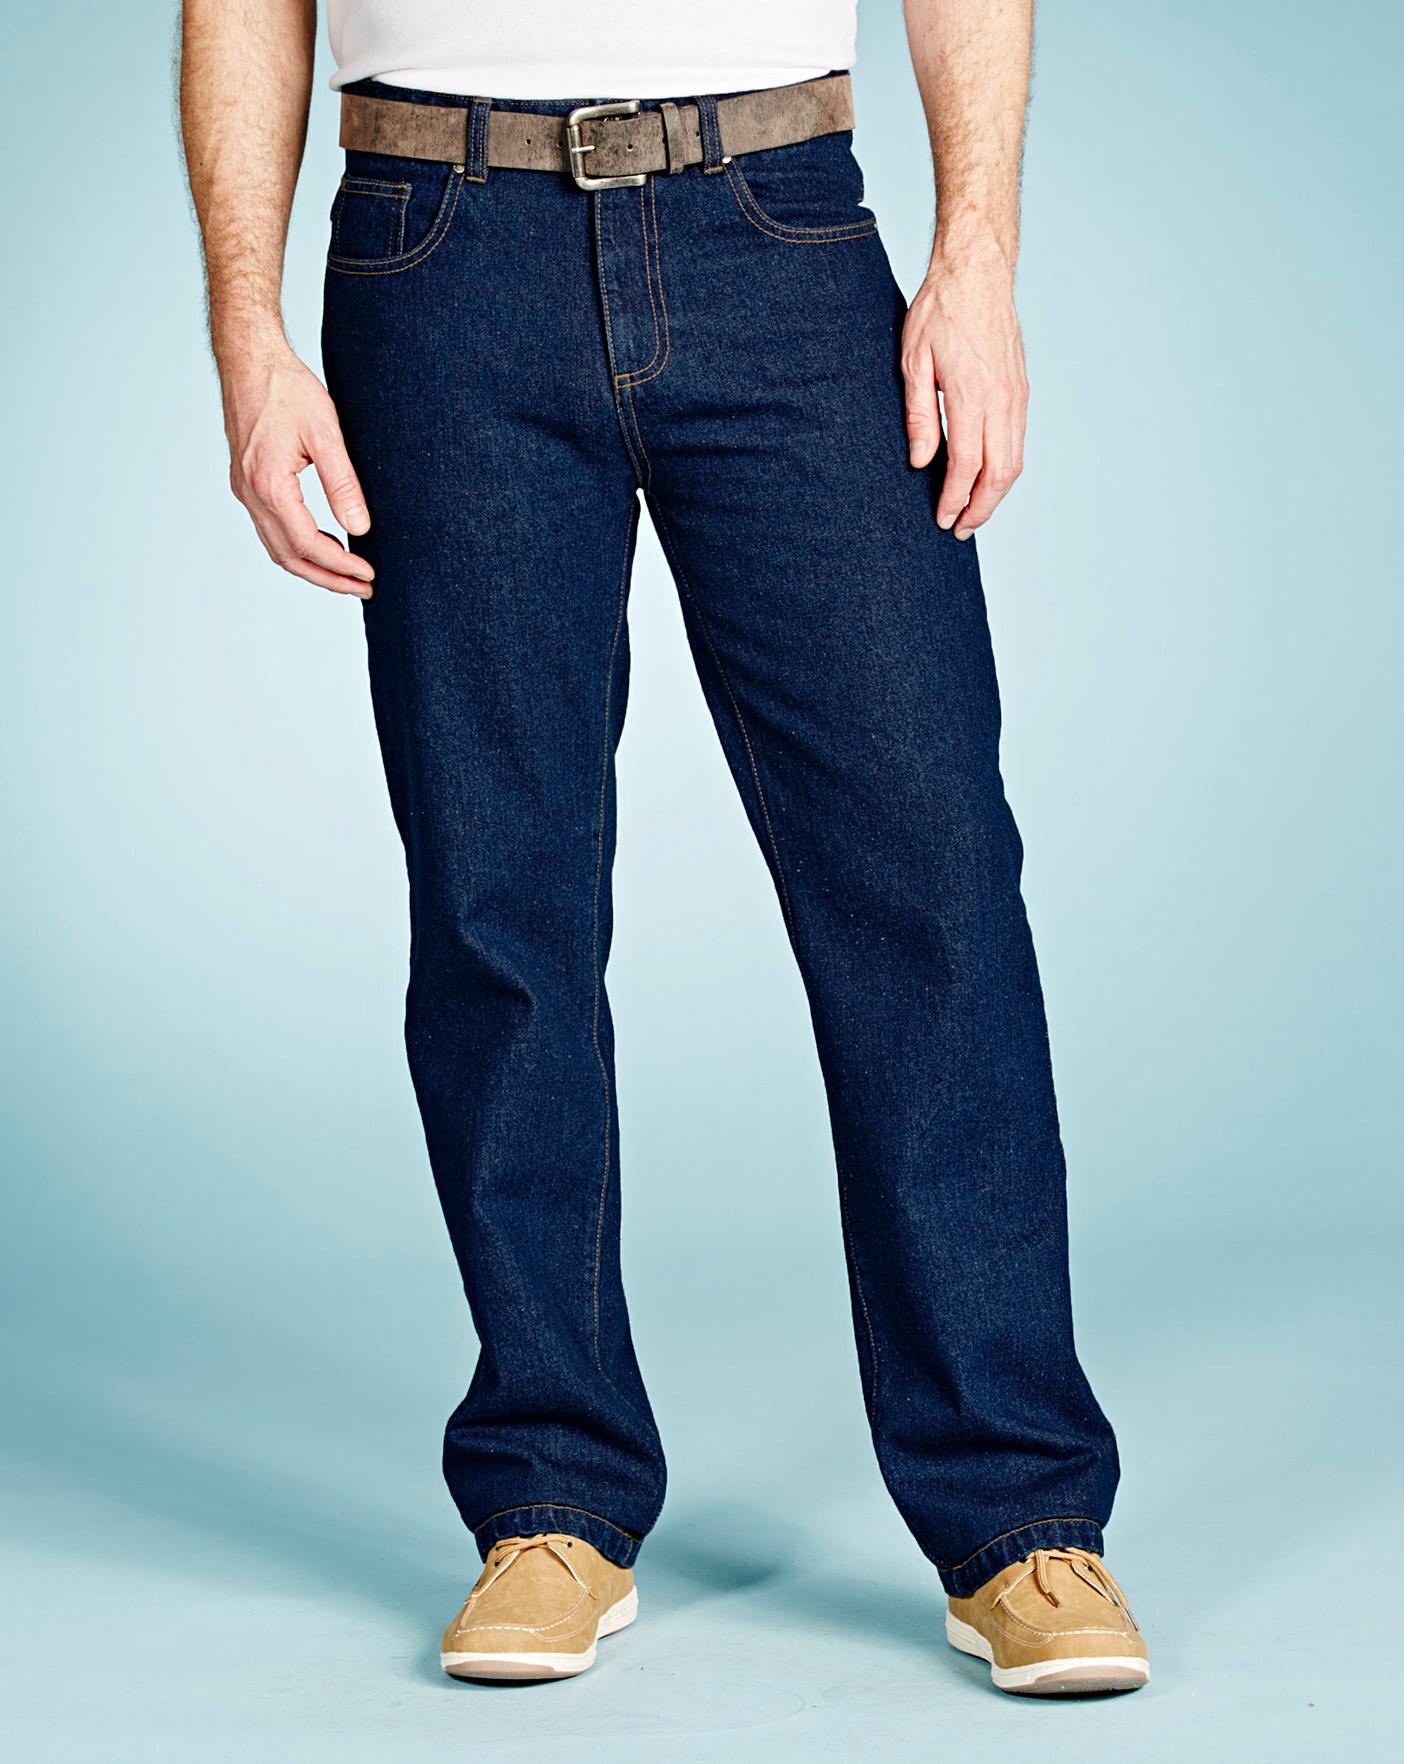 L reg. Синие широкие джинсы мужские. Голубые джинсы мужские широкие. Джинсы мужские w32 l32. Джинсы баталы мужские.